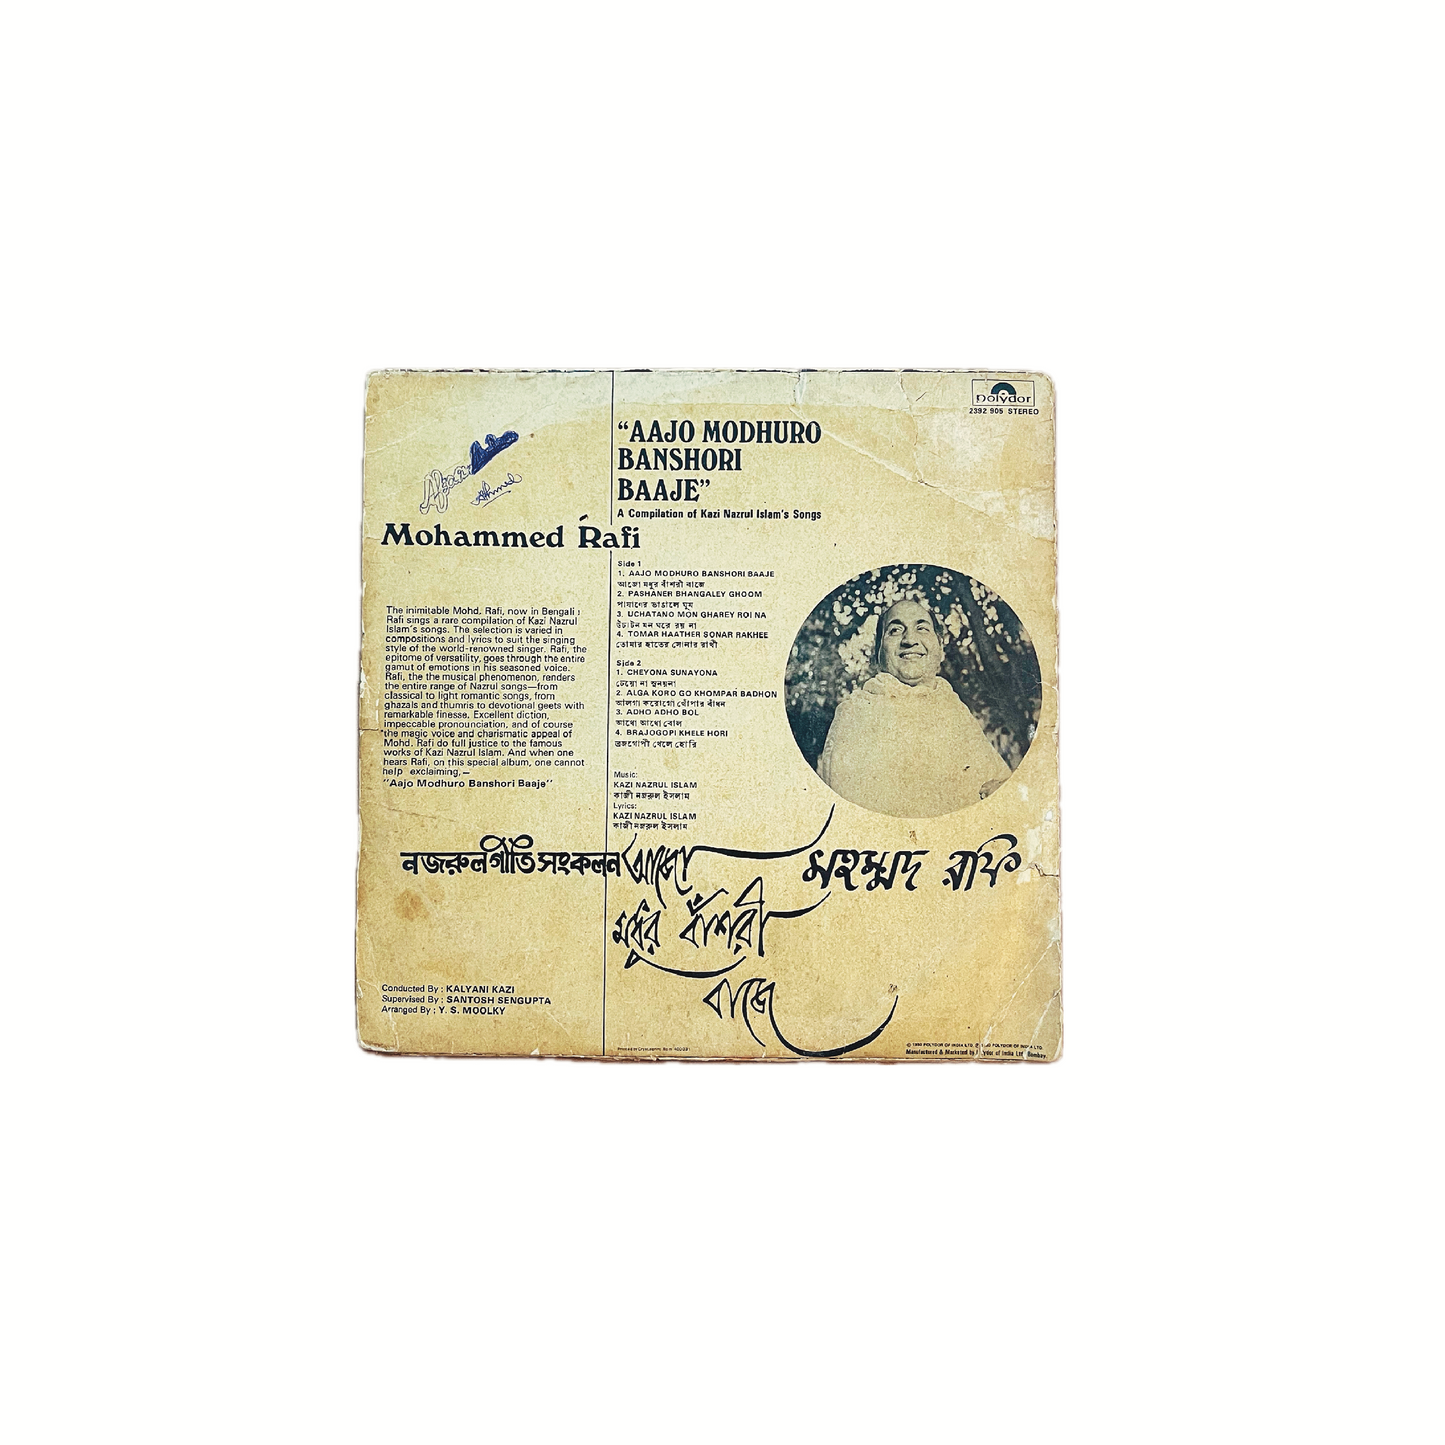 'LEGENDARY MOHD. RAFI' -VINTAGE VINYL LP RECORD 1980